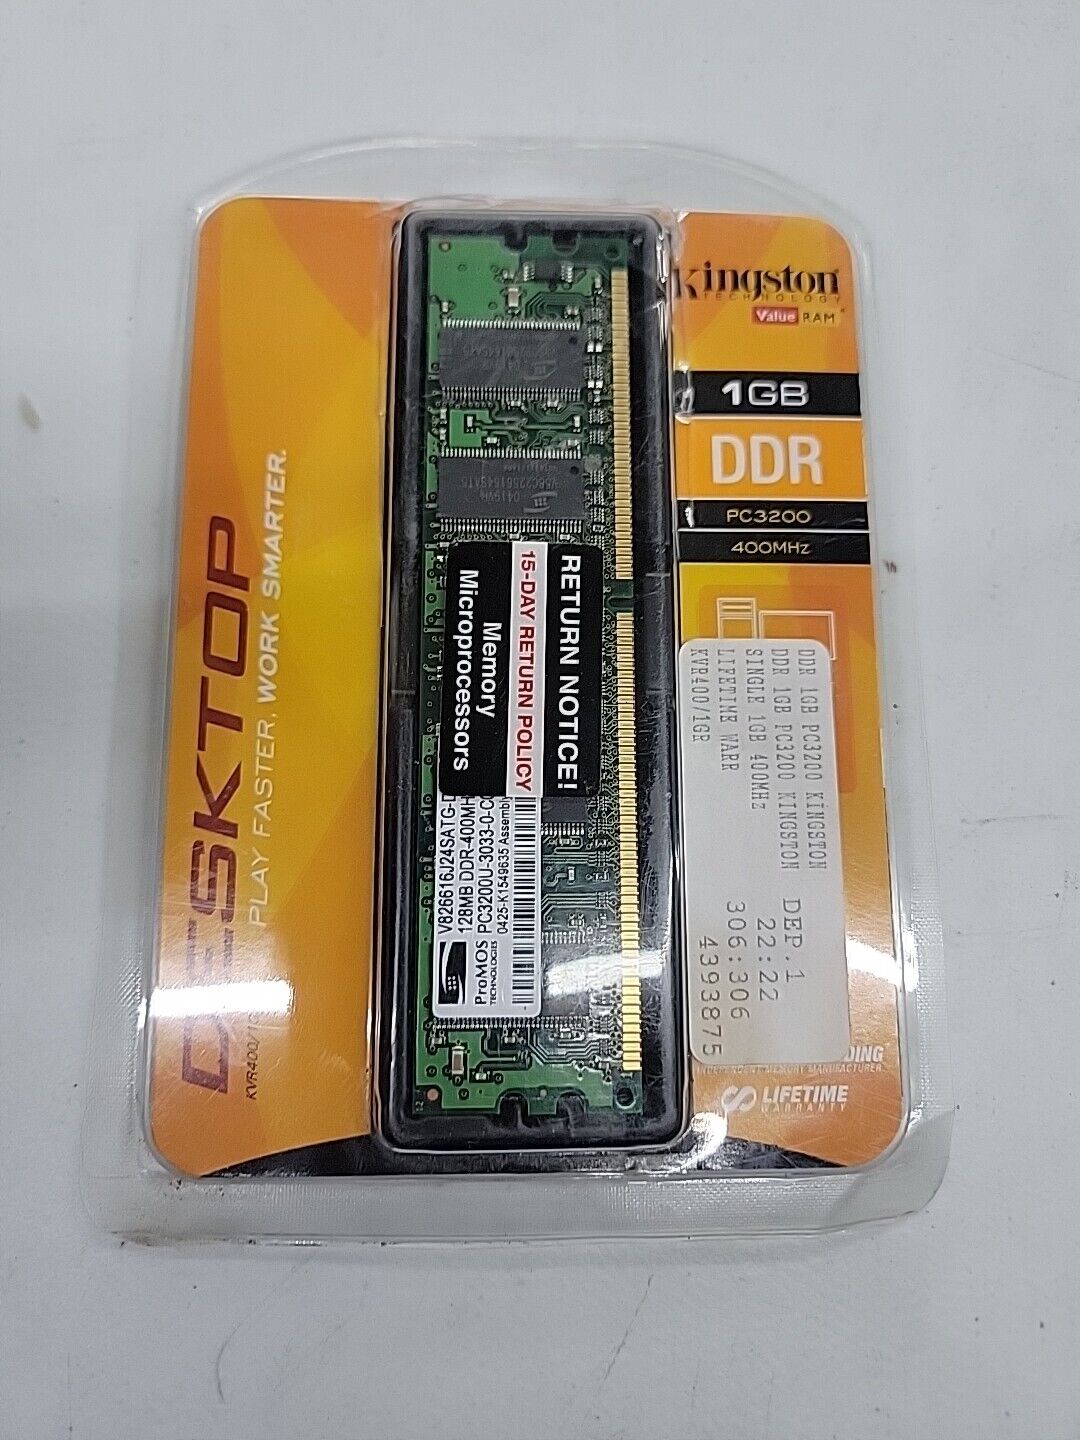 Genuine Kingston Value Ram (KVR400 / 1GB) Desktop PC3200 Memory Stick 400MHz